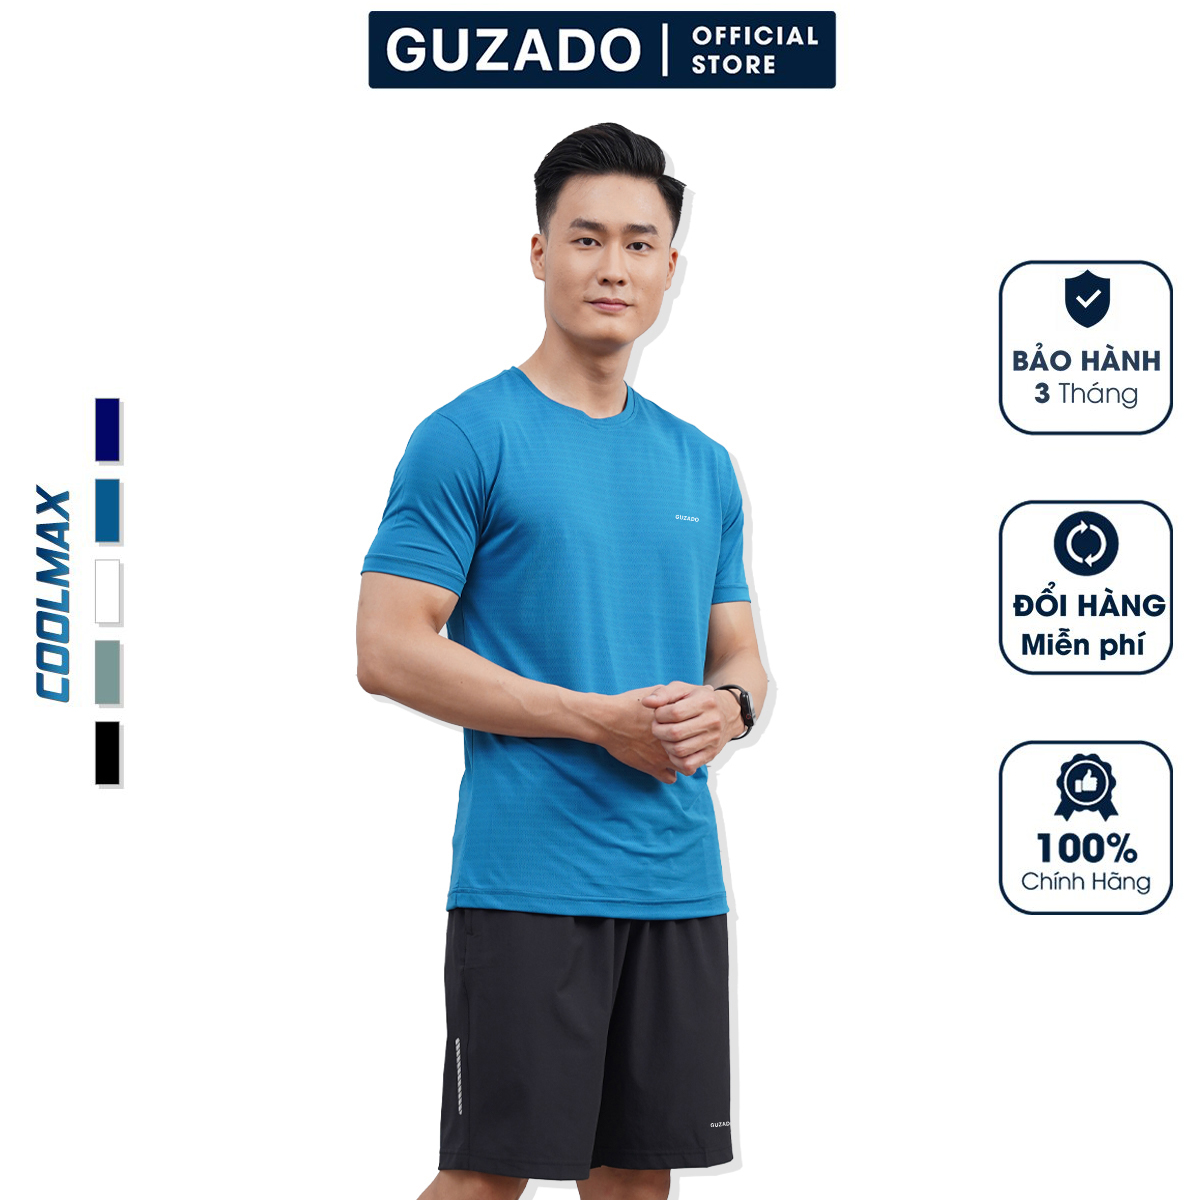 Bộ quần áo nam thể thao Guzado Chất Coolmax Thể Thao Siêu Mát,Co Giãn Vận Động Thoải Mái BCT2202